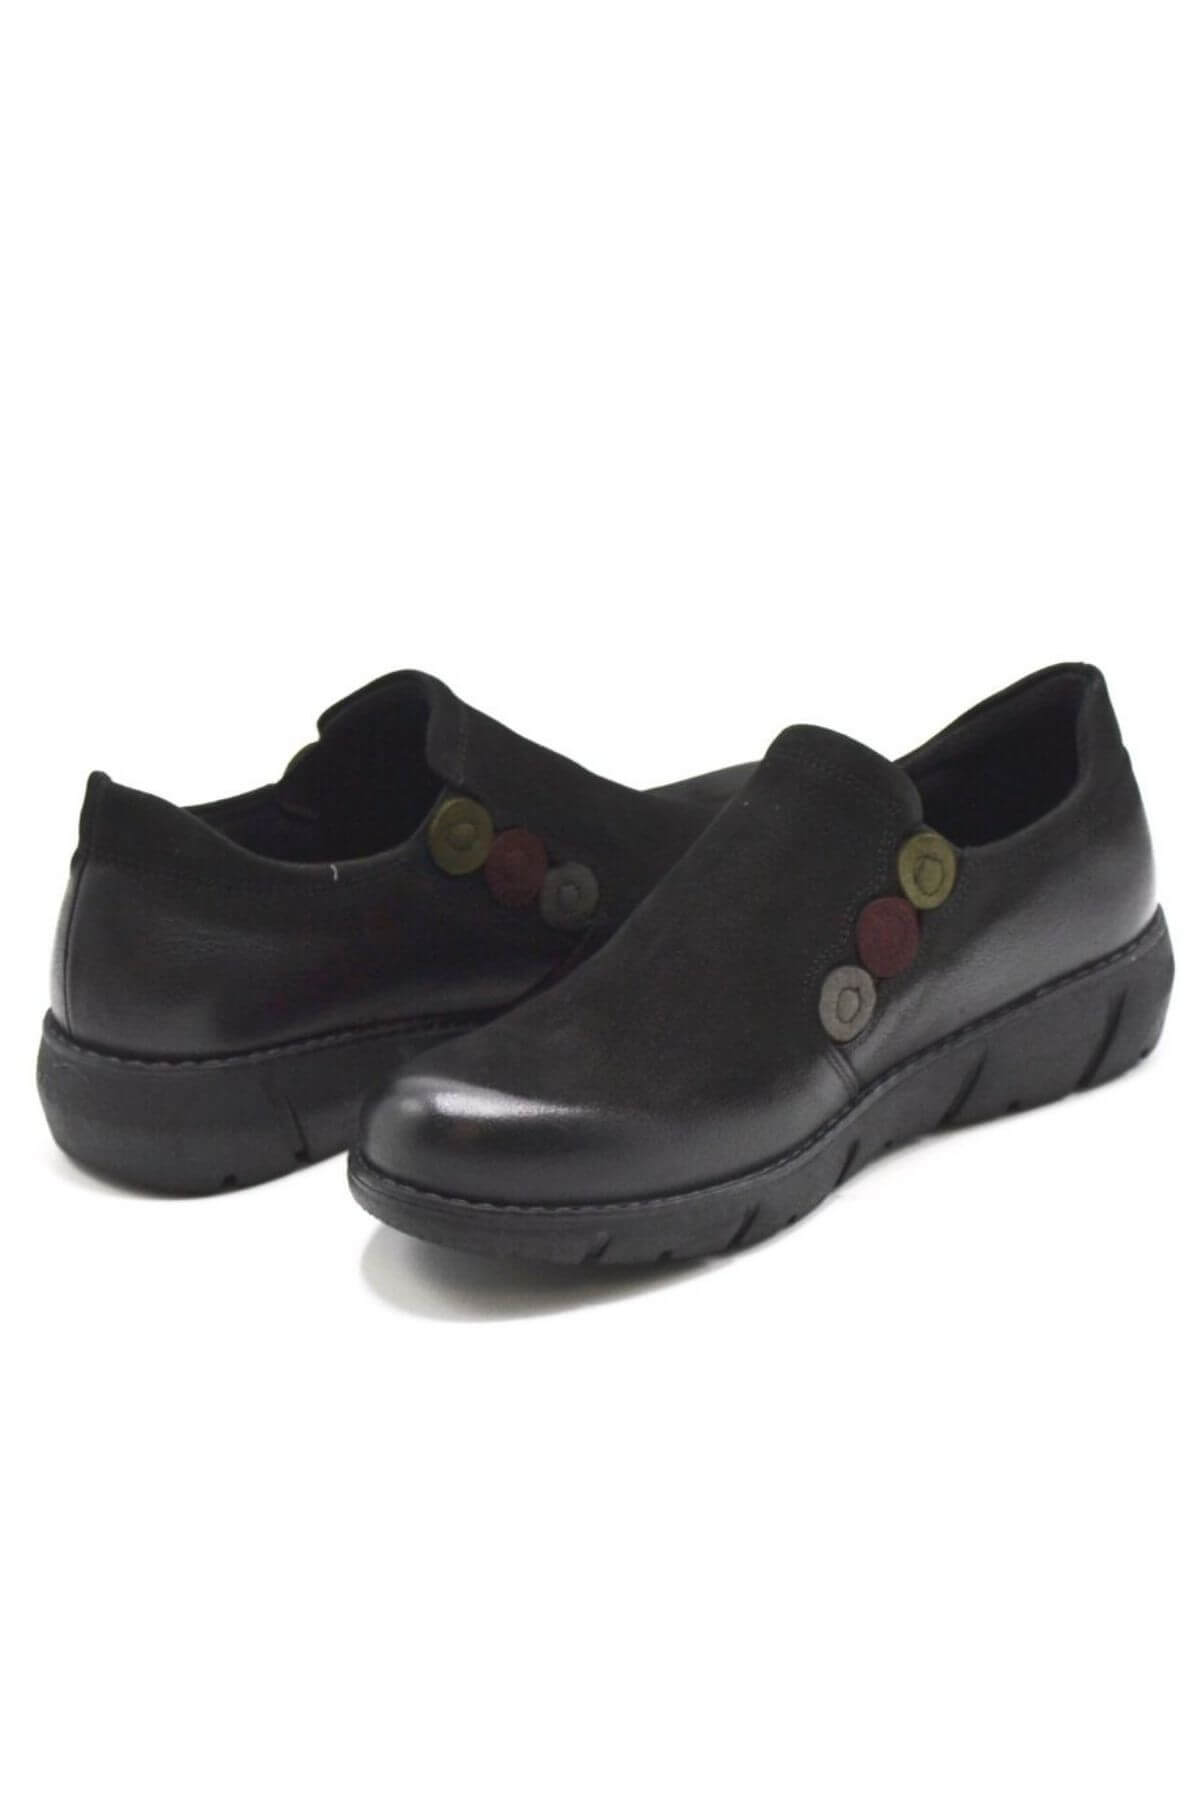 Kadın Casual Nubuk Deri Siyah Ayakkabı 1953714K